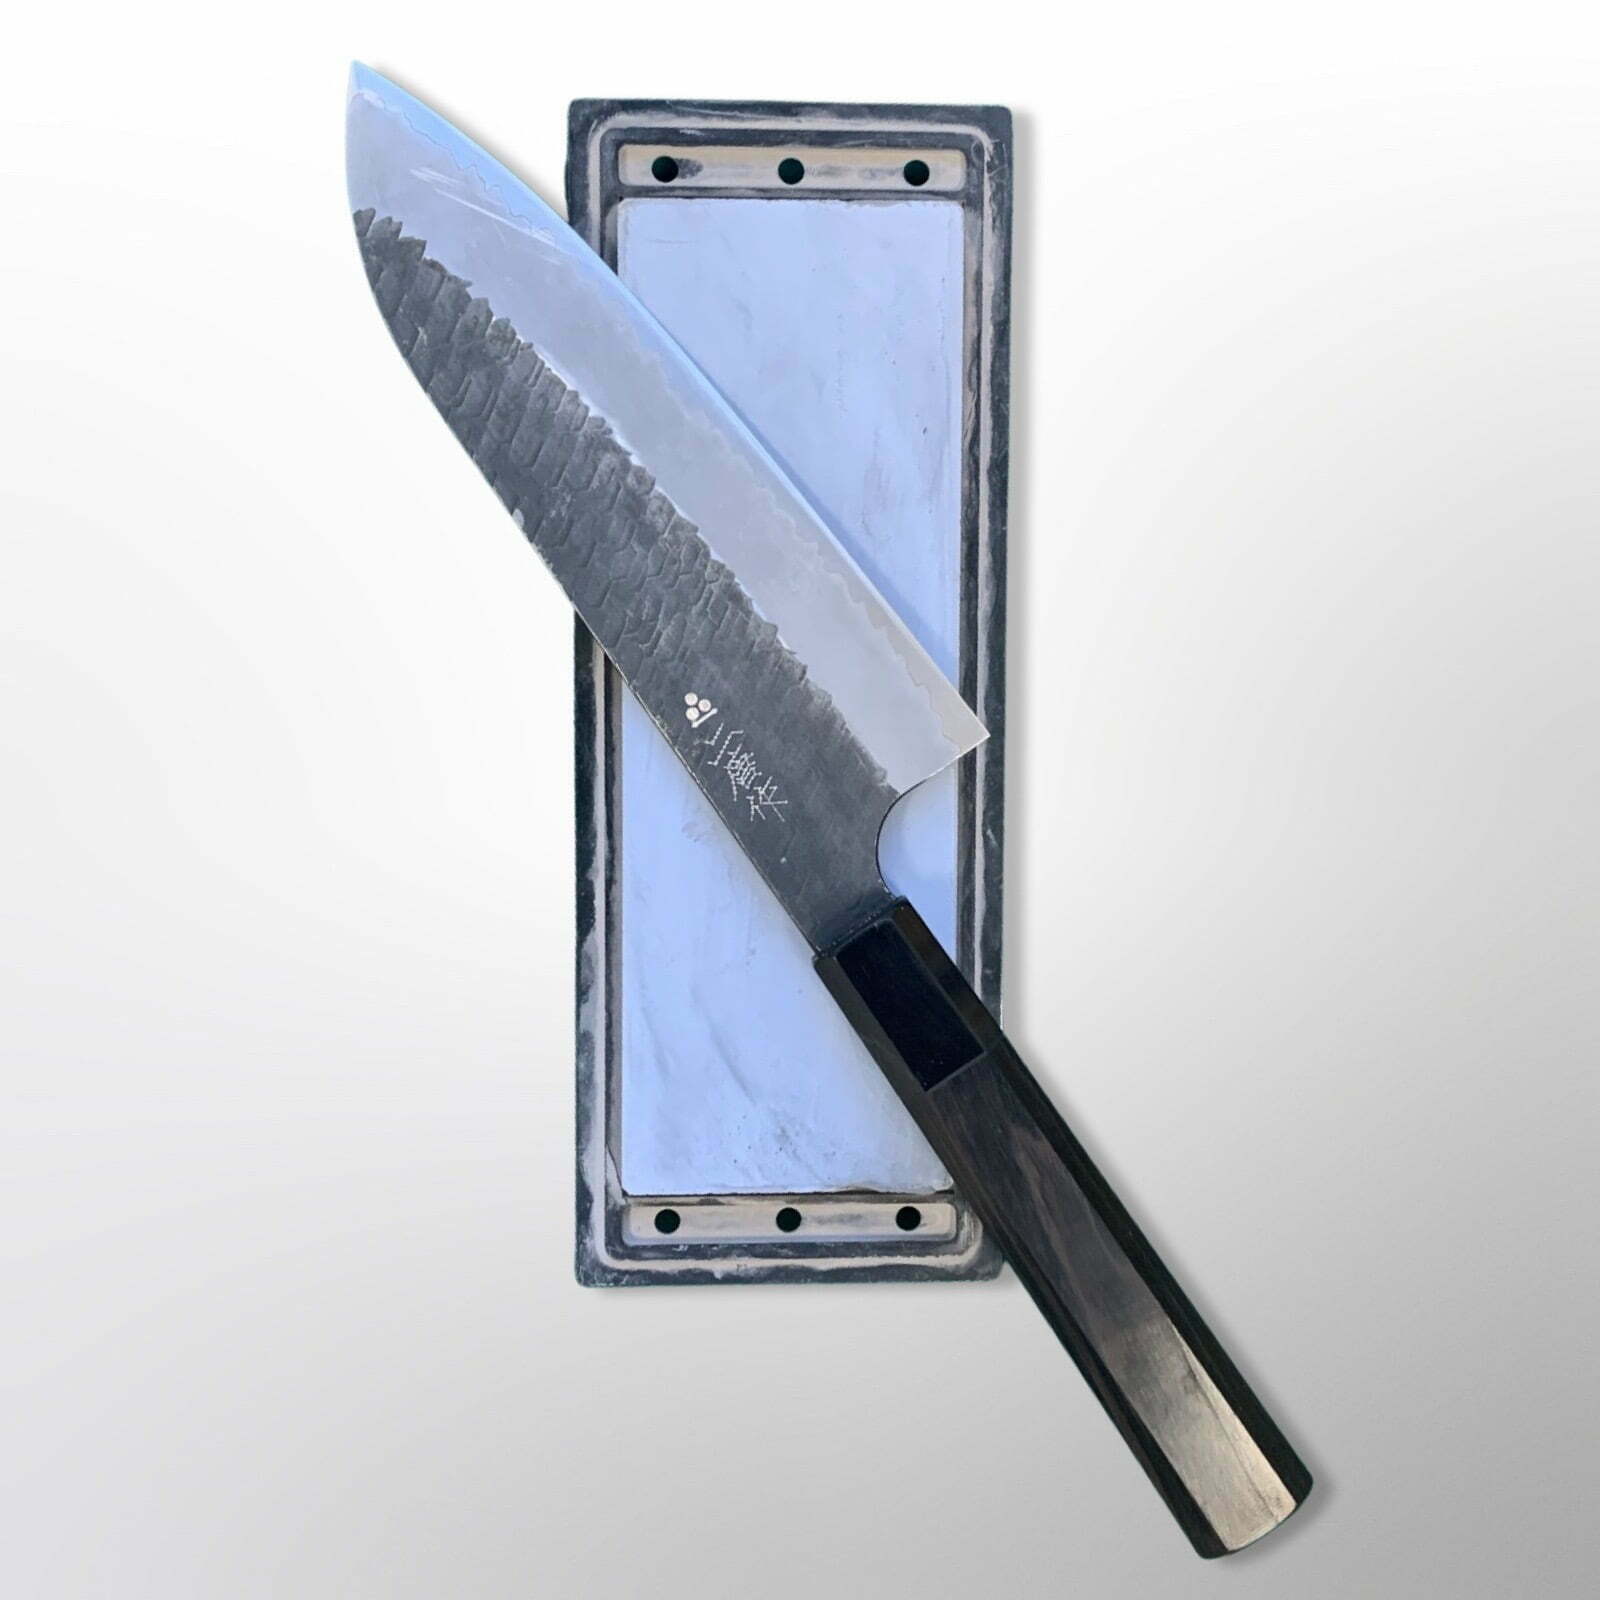 סדנת השחזת סכינים – 1 מרץ יום שישי 12:30 – SKSADN240301